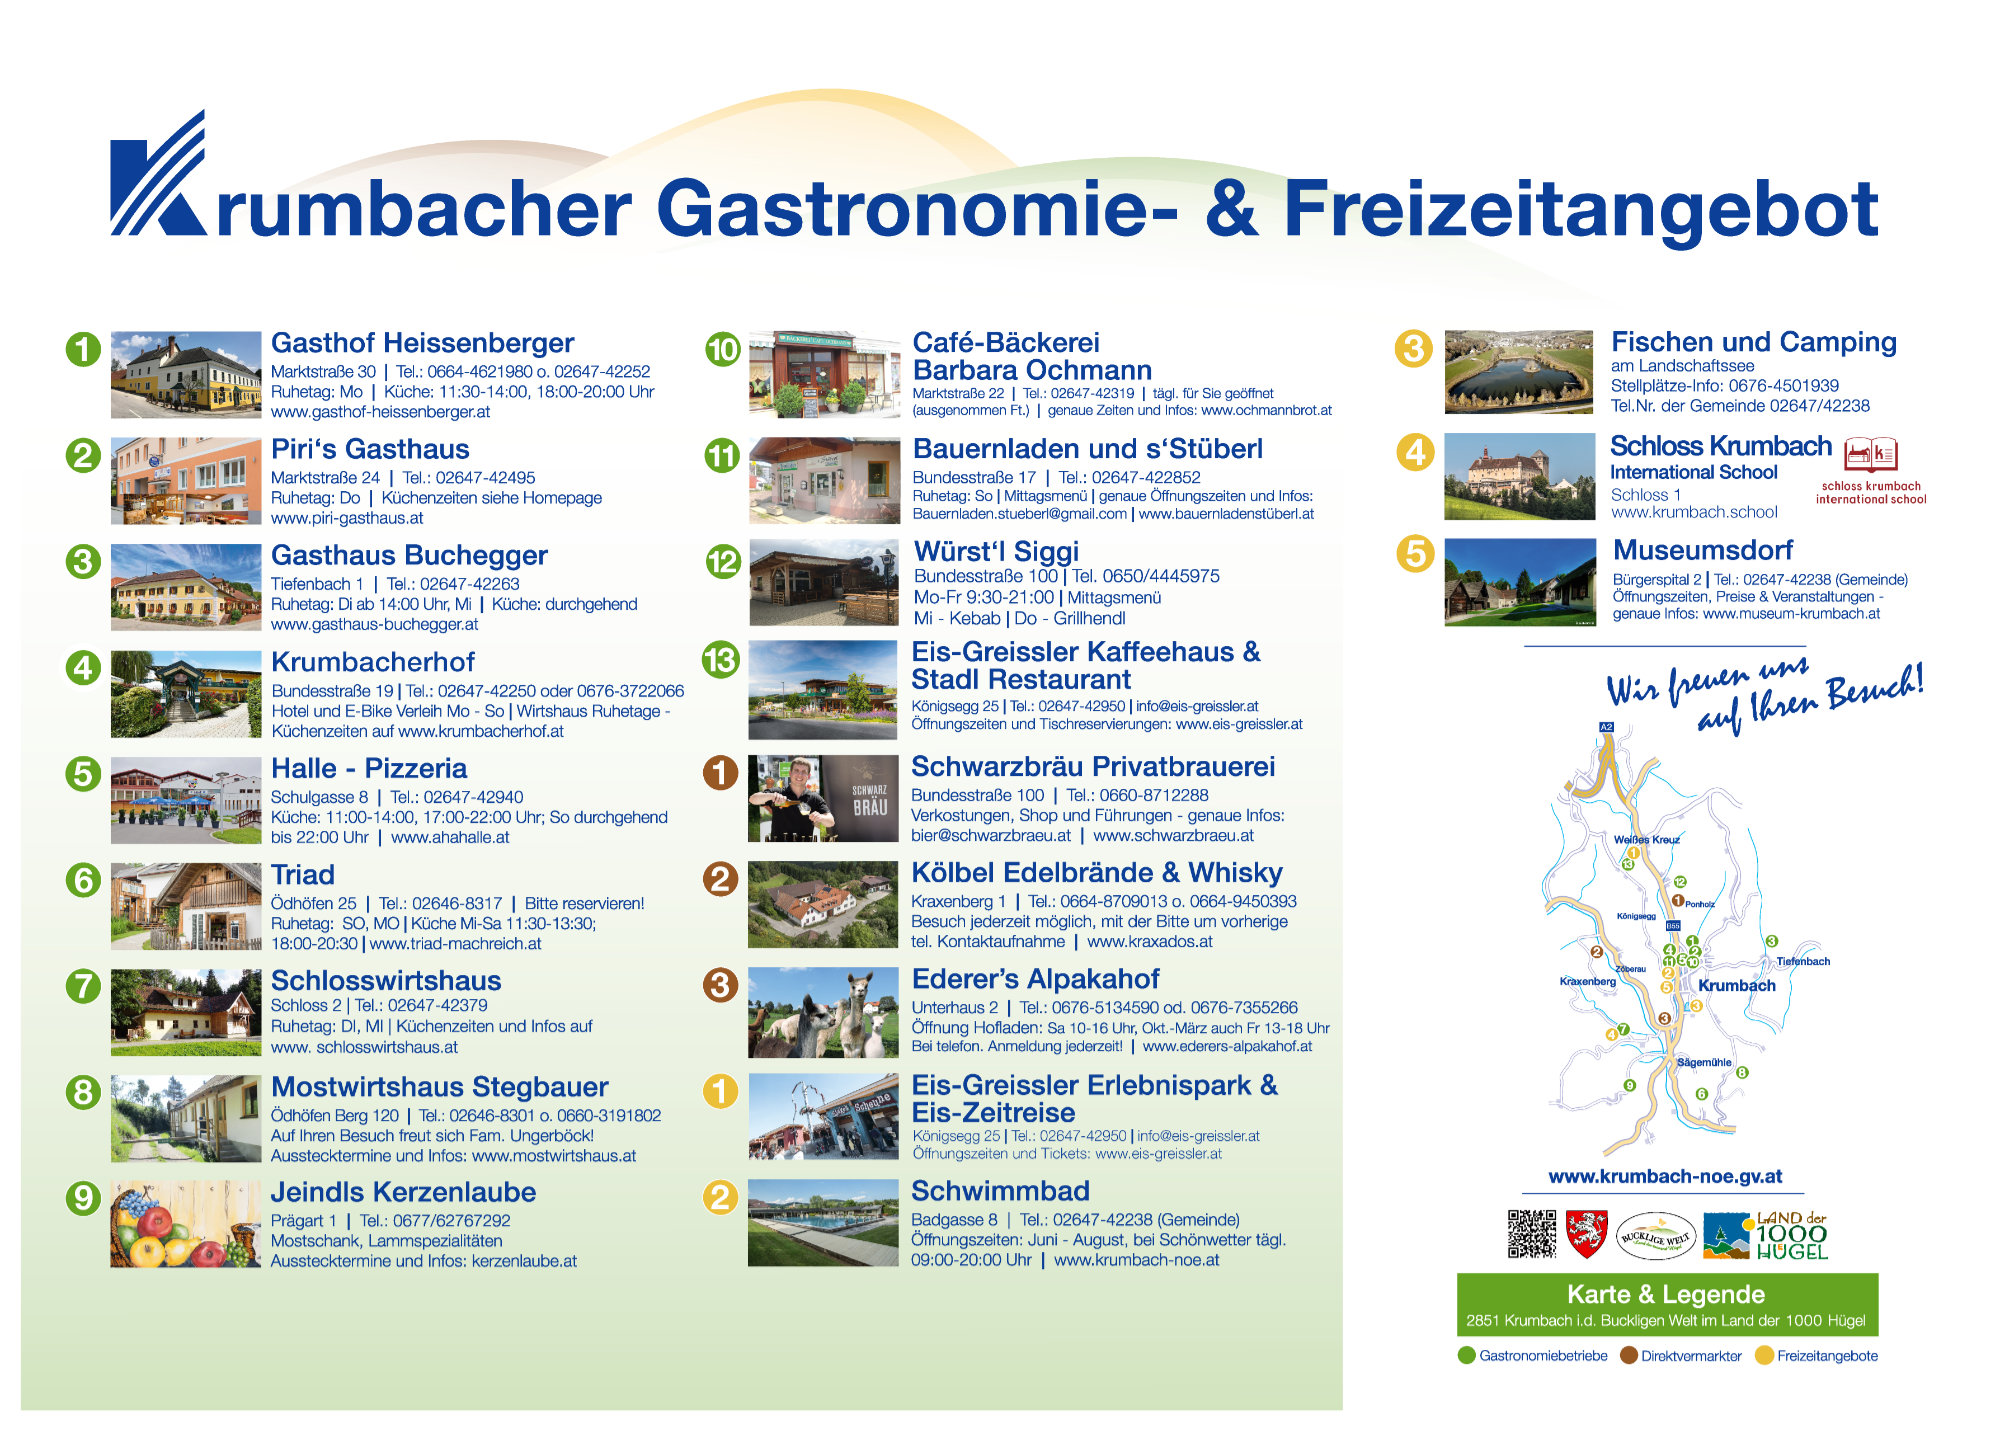 Gastronomie & Freizeitangebot in Krumbach in der Buckligen Welt, Niederösterreich